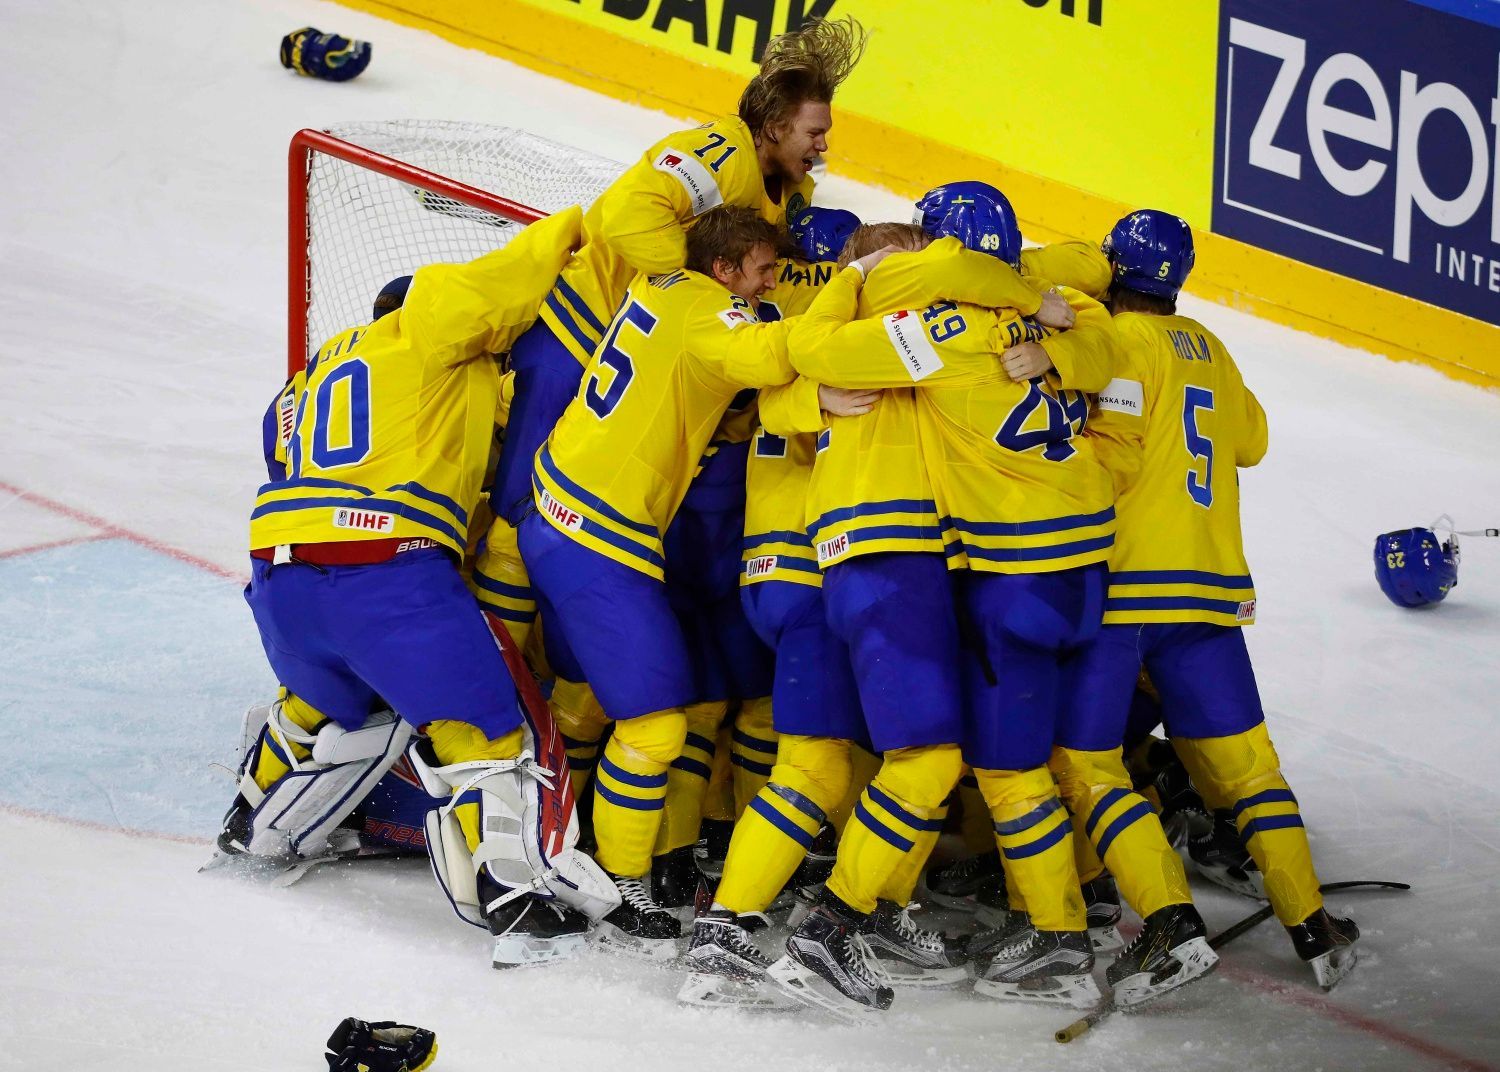 MS 2017, Kanada-Švédsko: Švédové slaví vítězství ve finále